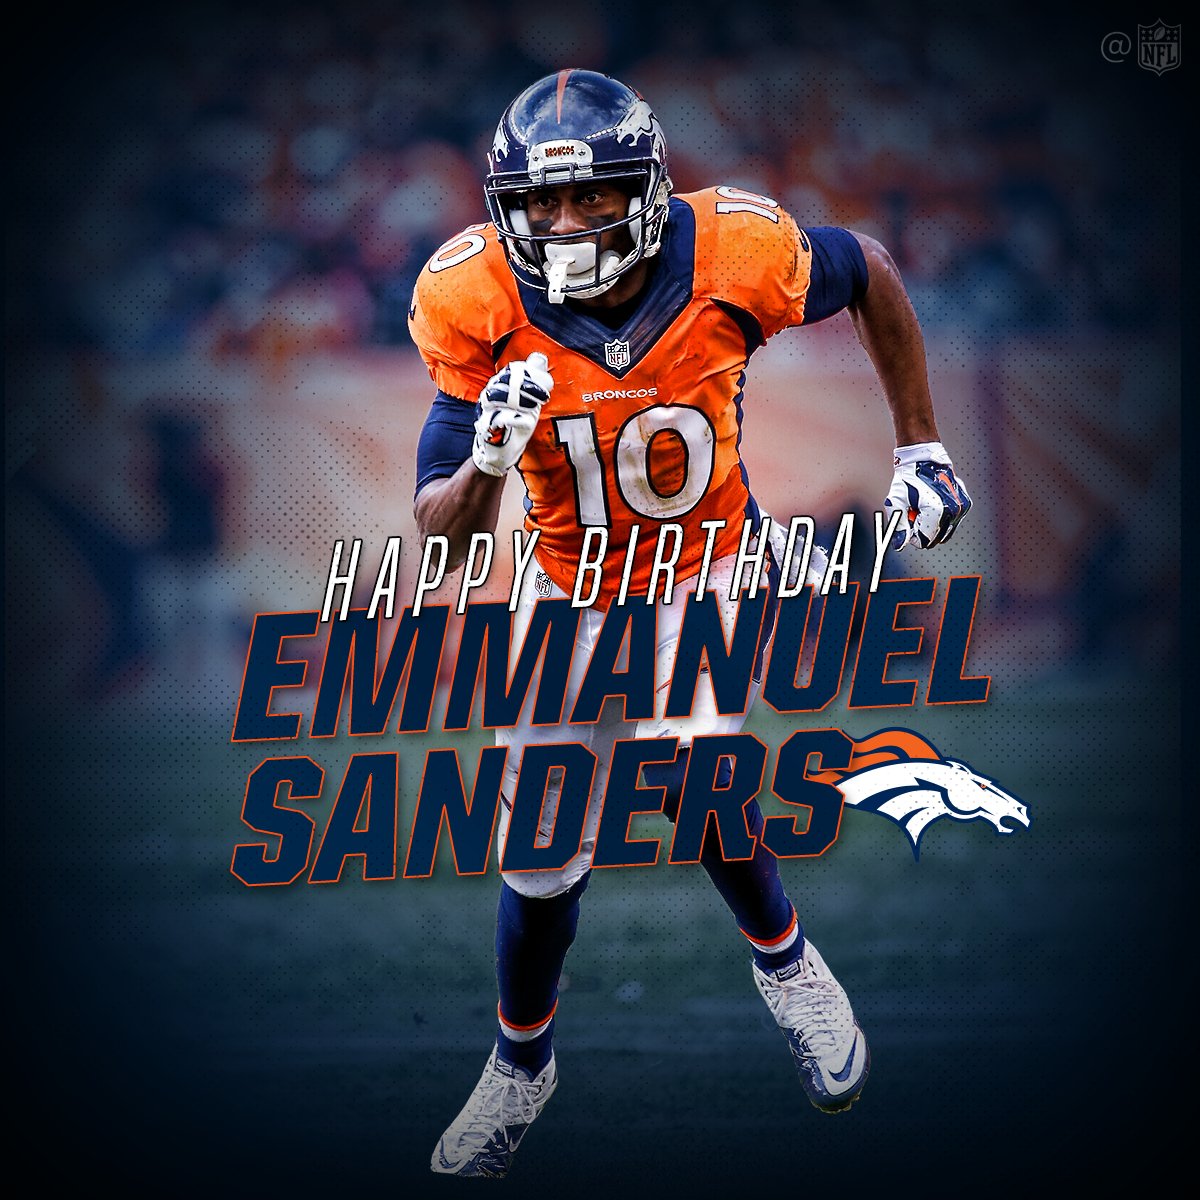 Hoy cumple 30 años el gran receptor Emmanuel Sanders jugador de los Denver Broncos 
Happy Birthday  